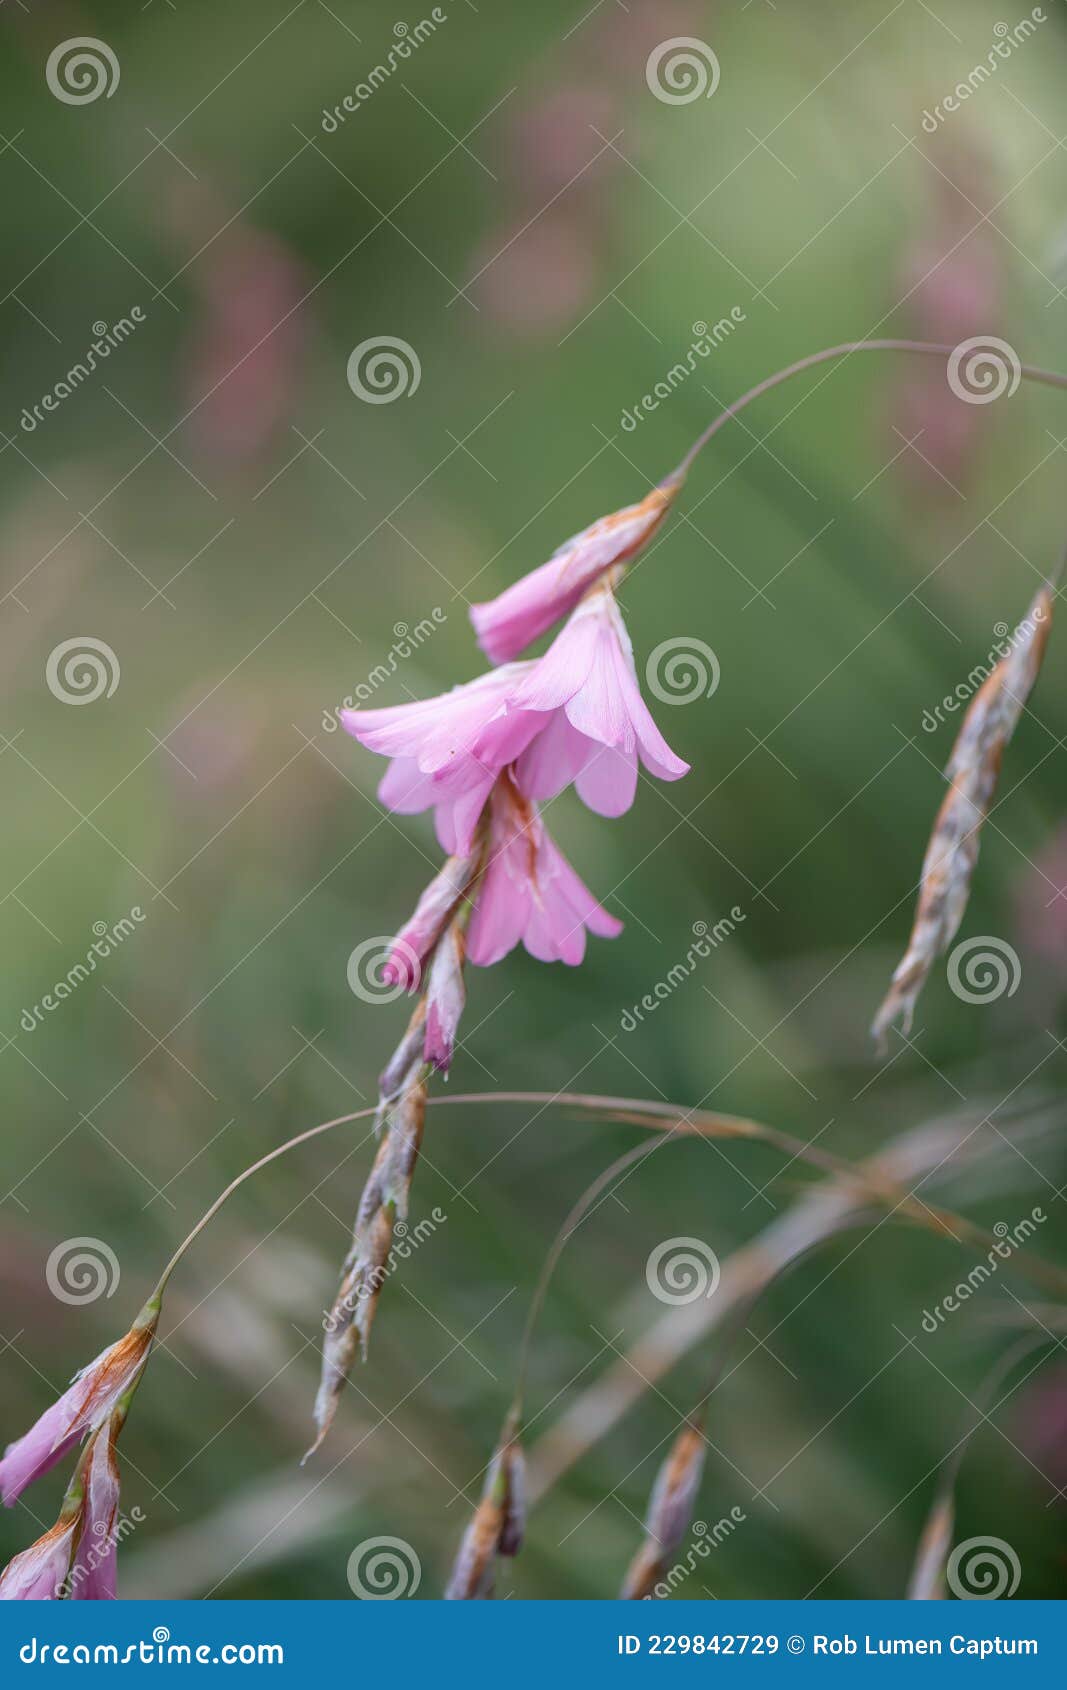 https://thumbs.dreamstime.com/z/angel-fishing-rod-dierama-robustum-pink-pending-flowers-angel-fishing-rod-grasklokkie-dierama-robustum-flowering-plant-229842729.jpg